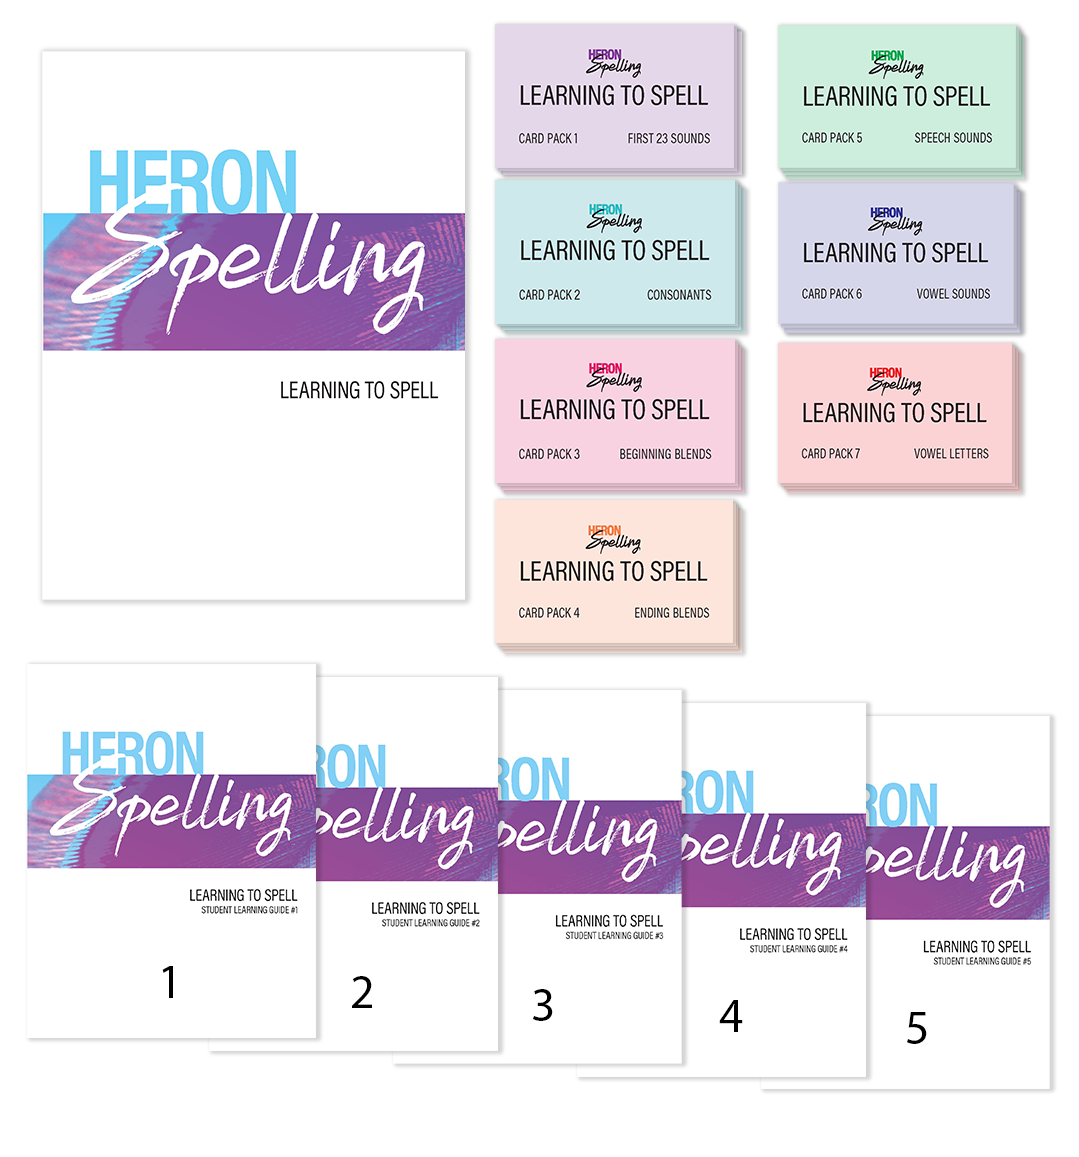 Heron Spelling - The Learning to Spell Program